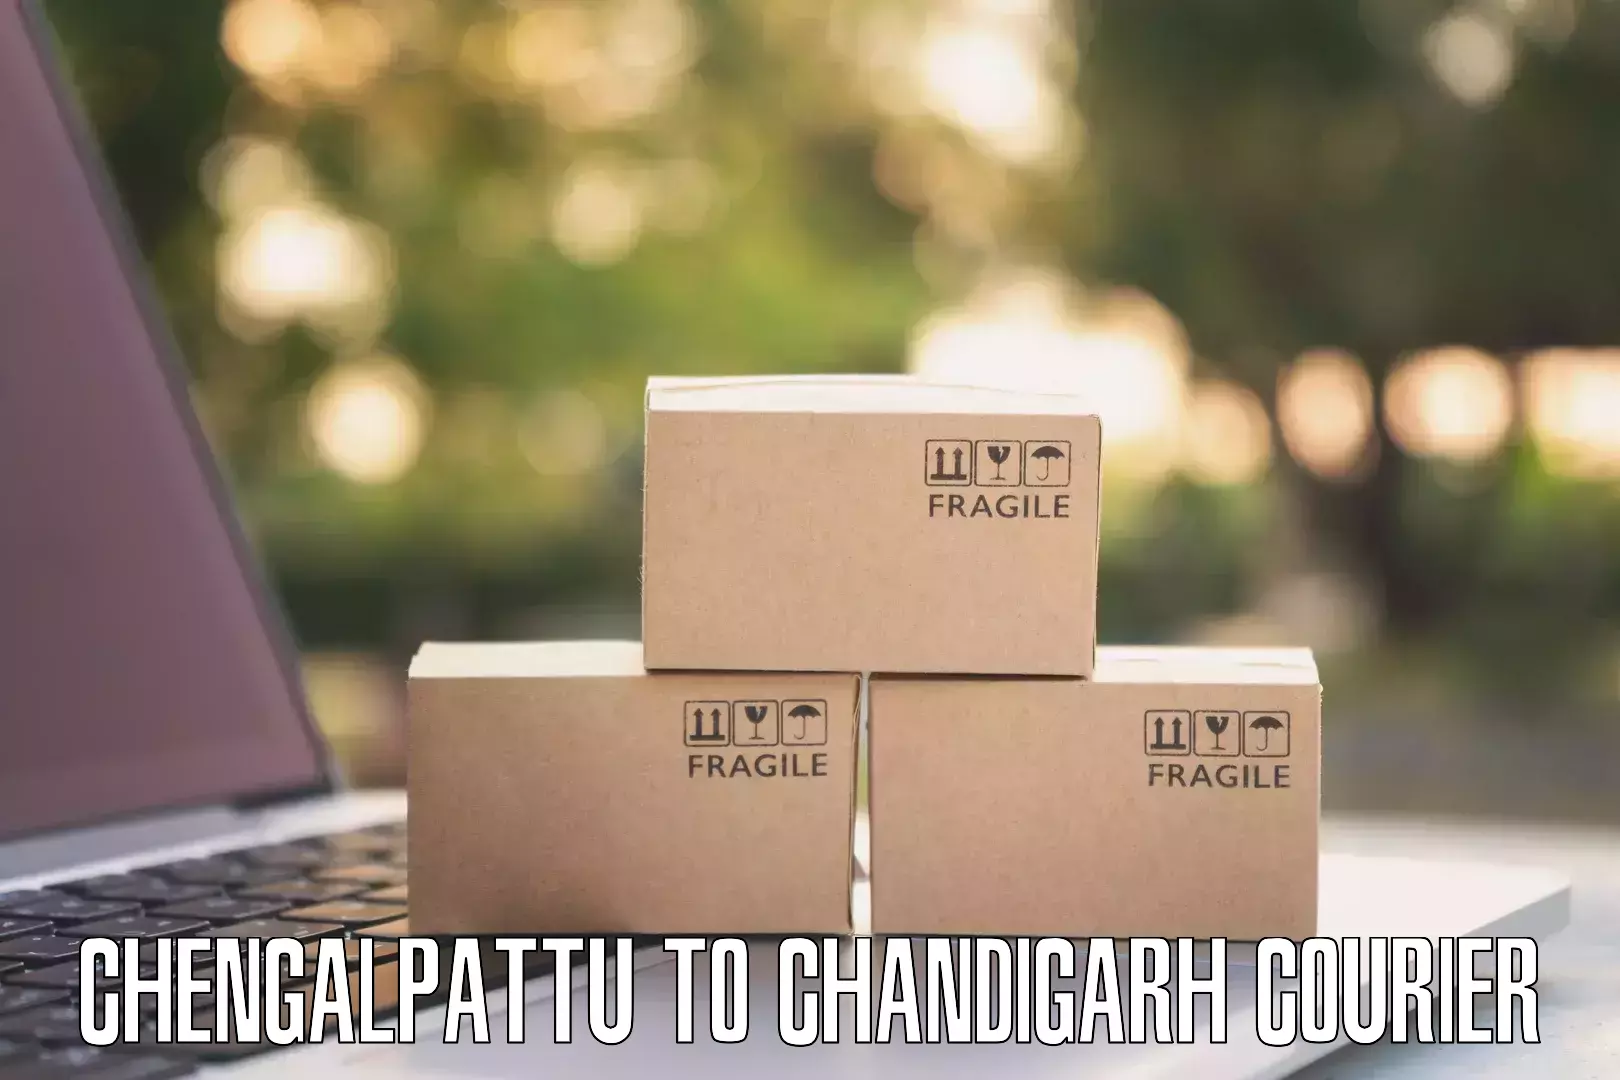 International courier rates Chengalpattu to Chandigarh